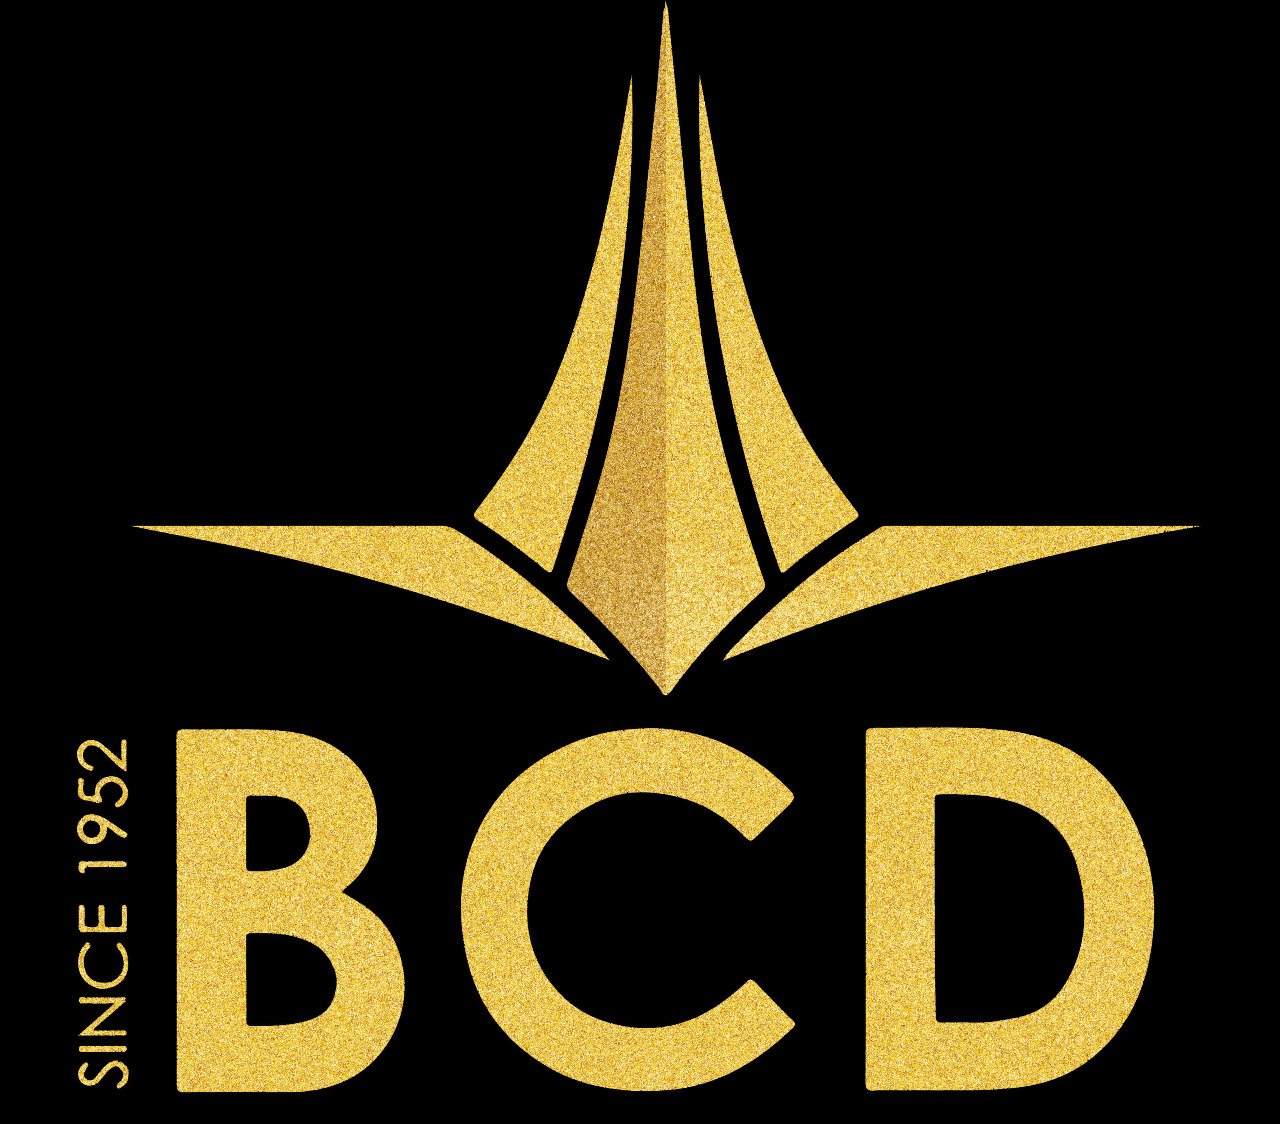 logo Bcd group